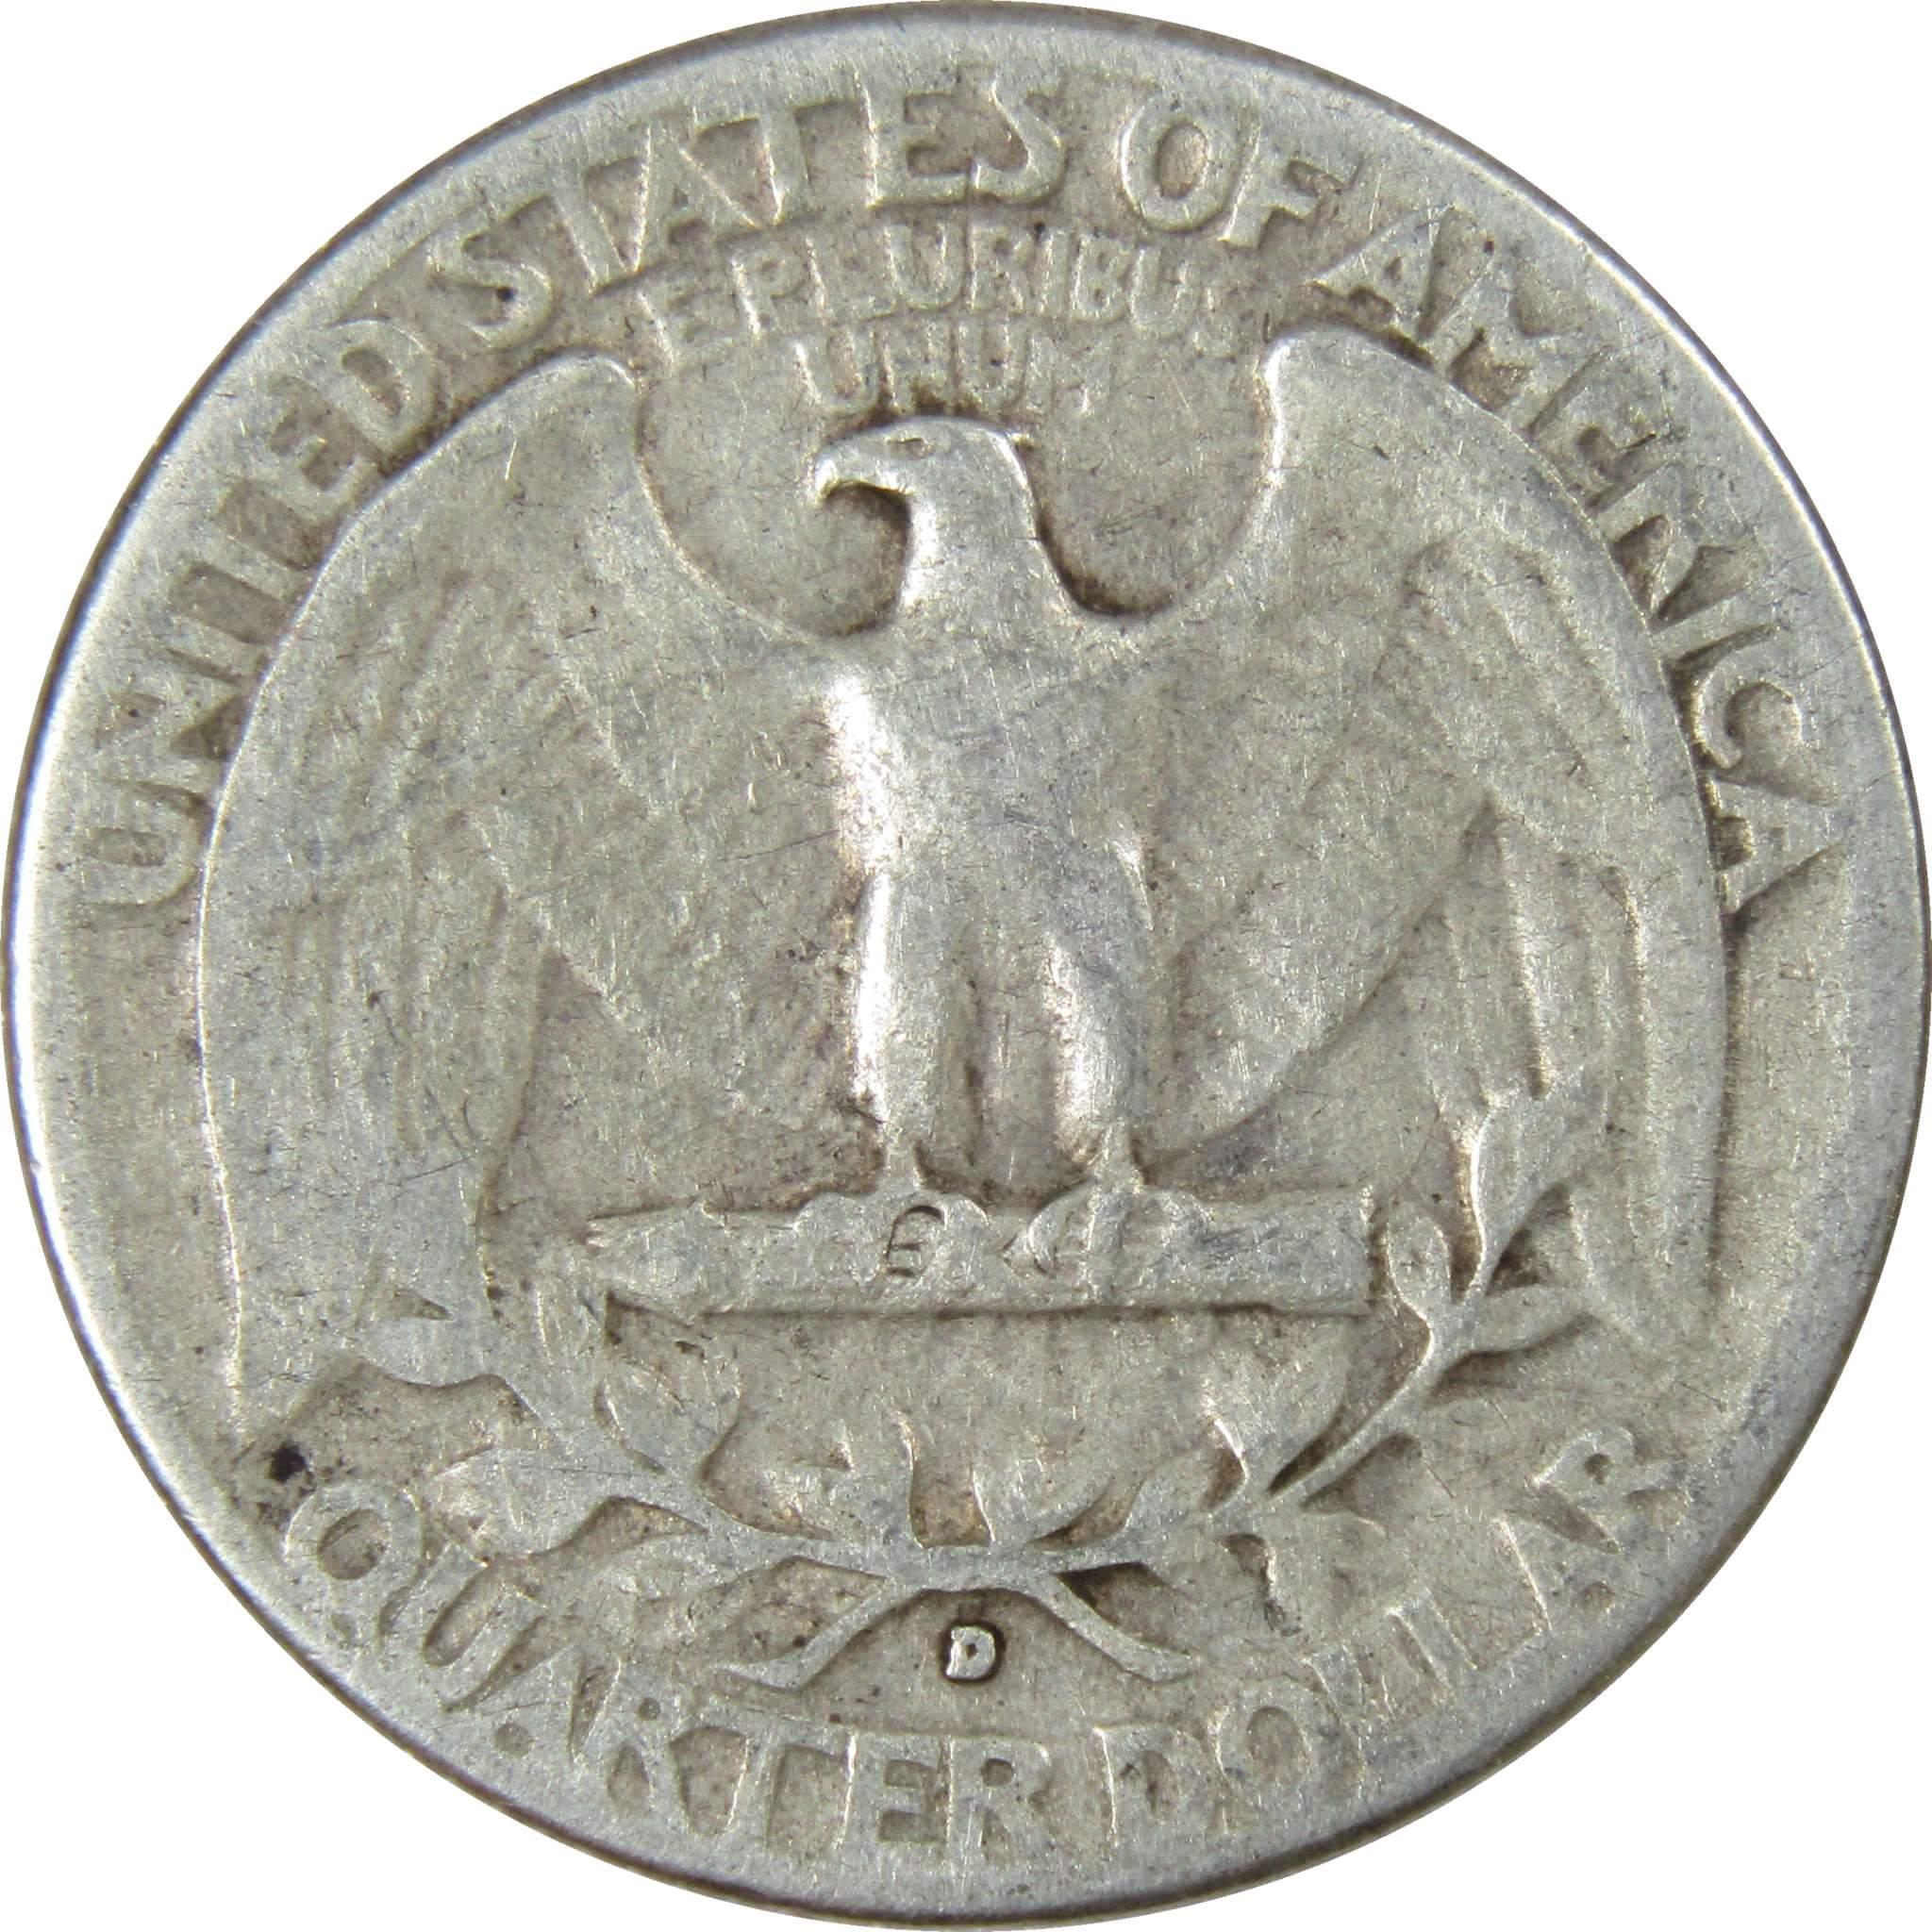 1937 D Washington Quarter AG About Good 90% Silver 25c US Coin Collectible